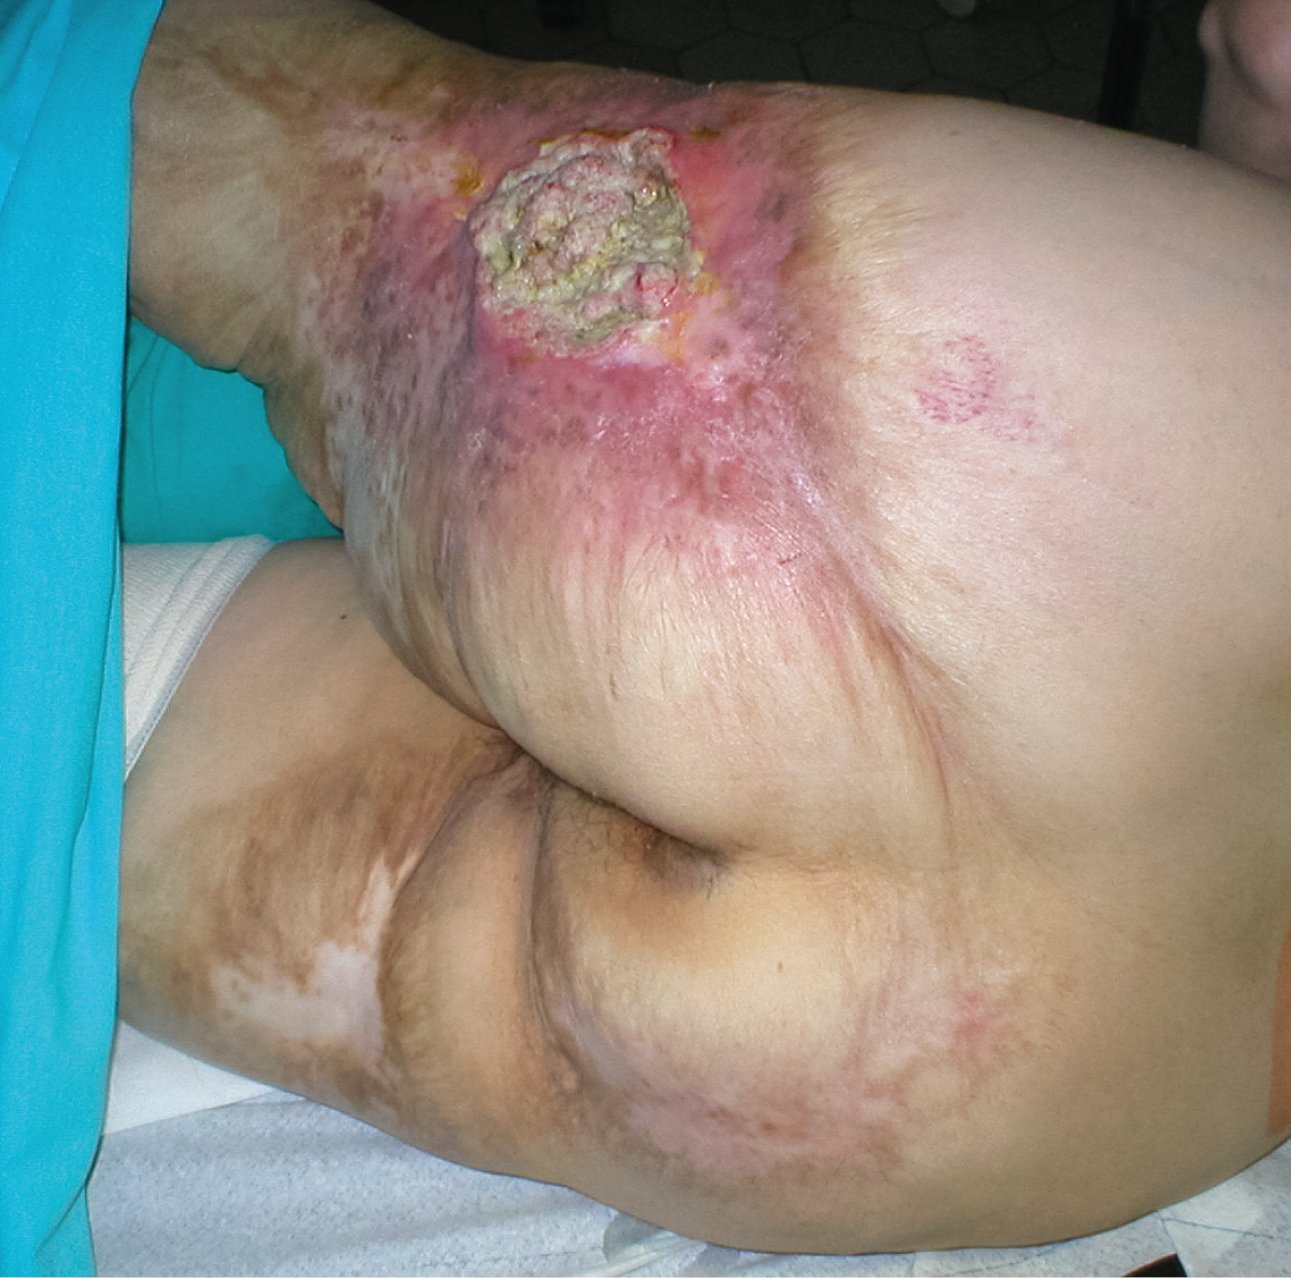    Fig. 24.8-5.  Úlcera de Marjolin: carcinoma escamocelular sobre una cicatriz de quemadura 